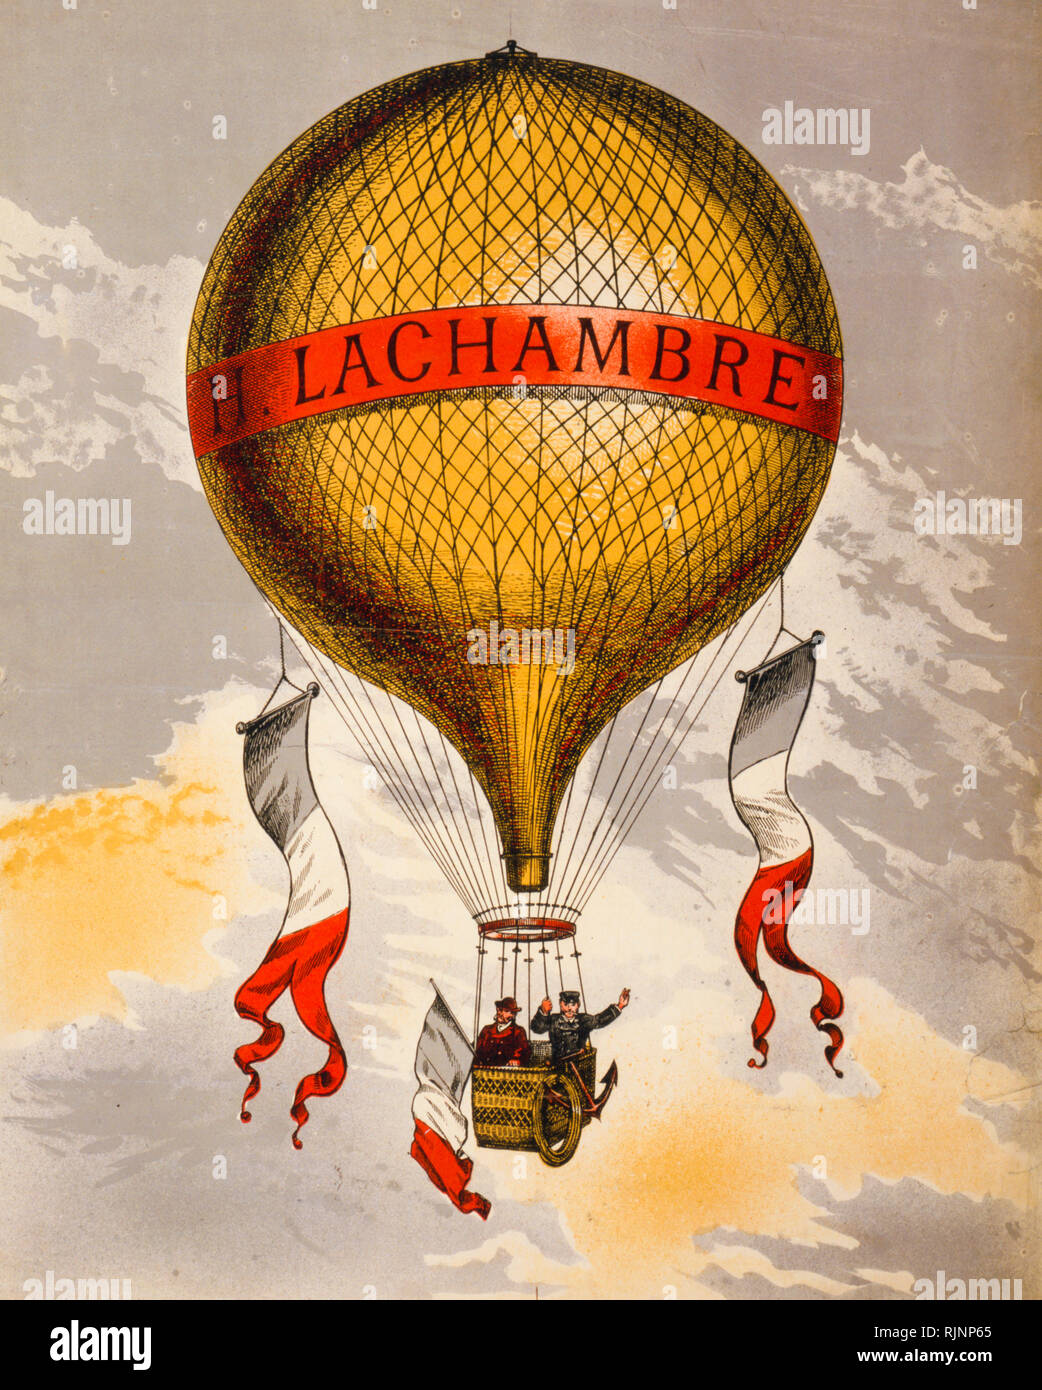 Vintage francese Poster pubblicitari Pubblicità eventualmente un palloncino fabbricati da Henri Lachambre di Vaugirard, Parigi, Francia, Europa, tra 1880 e 1900 - stampa Foto Stock